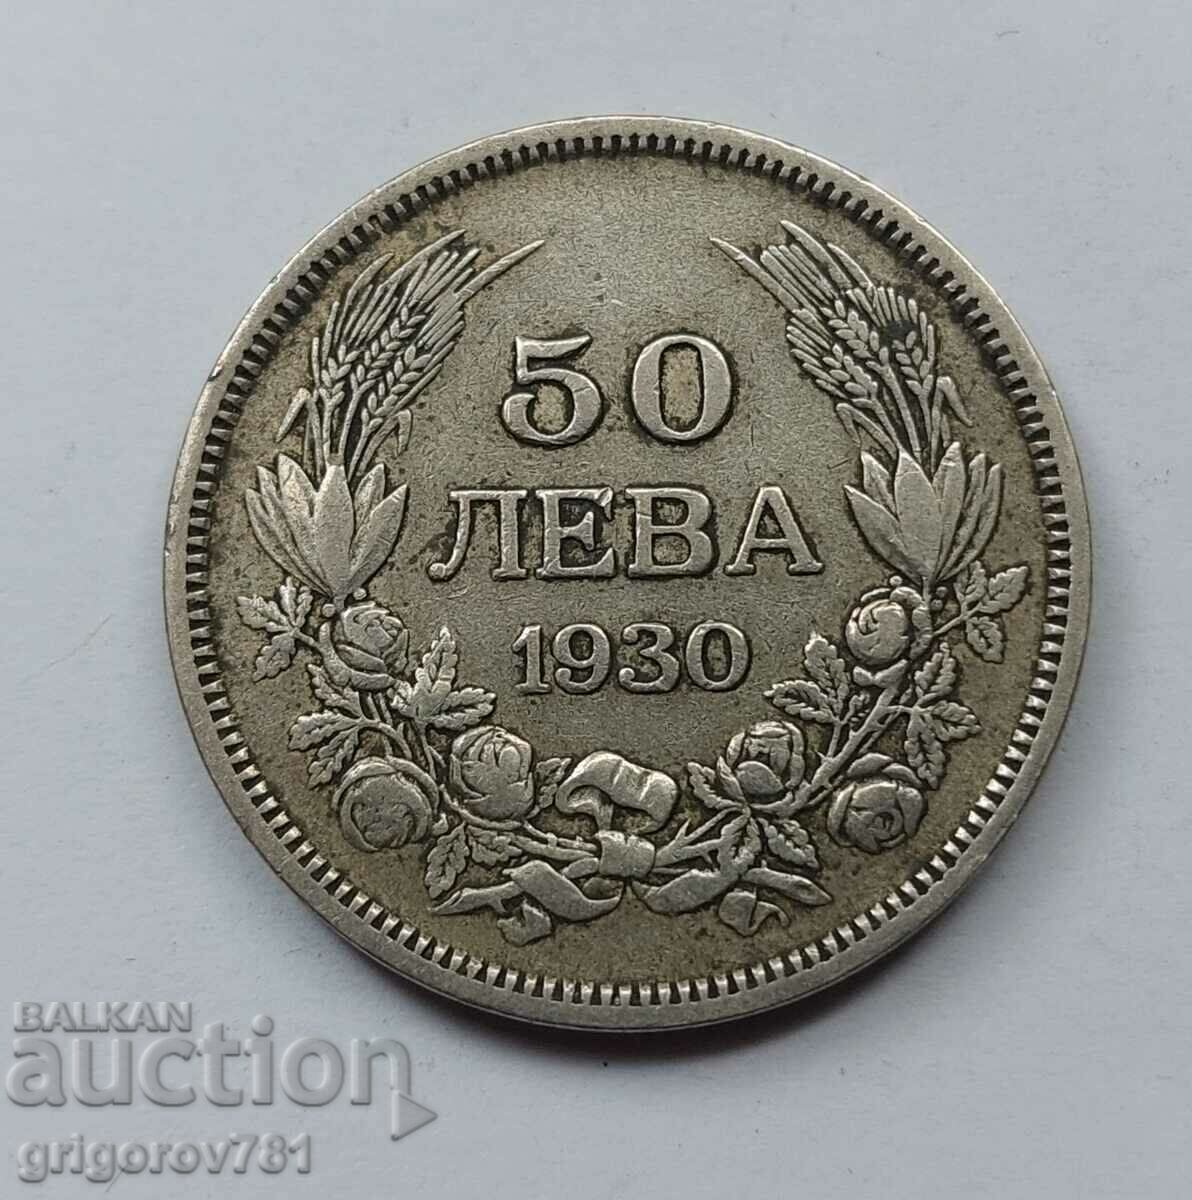 Ασήμι 50 λέβα Βουλγαρία 1930 - ασημένιο νόμισμα #71